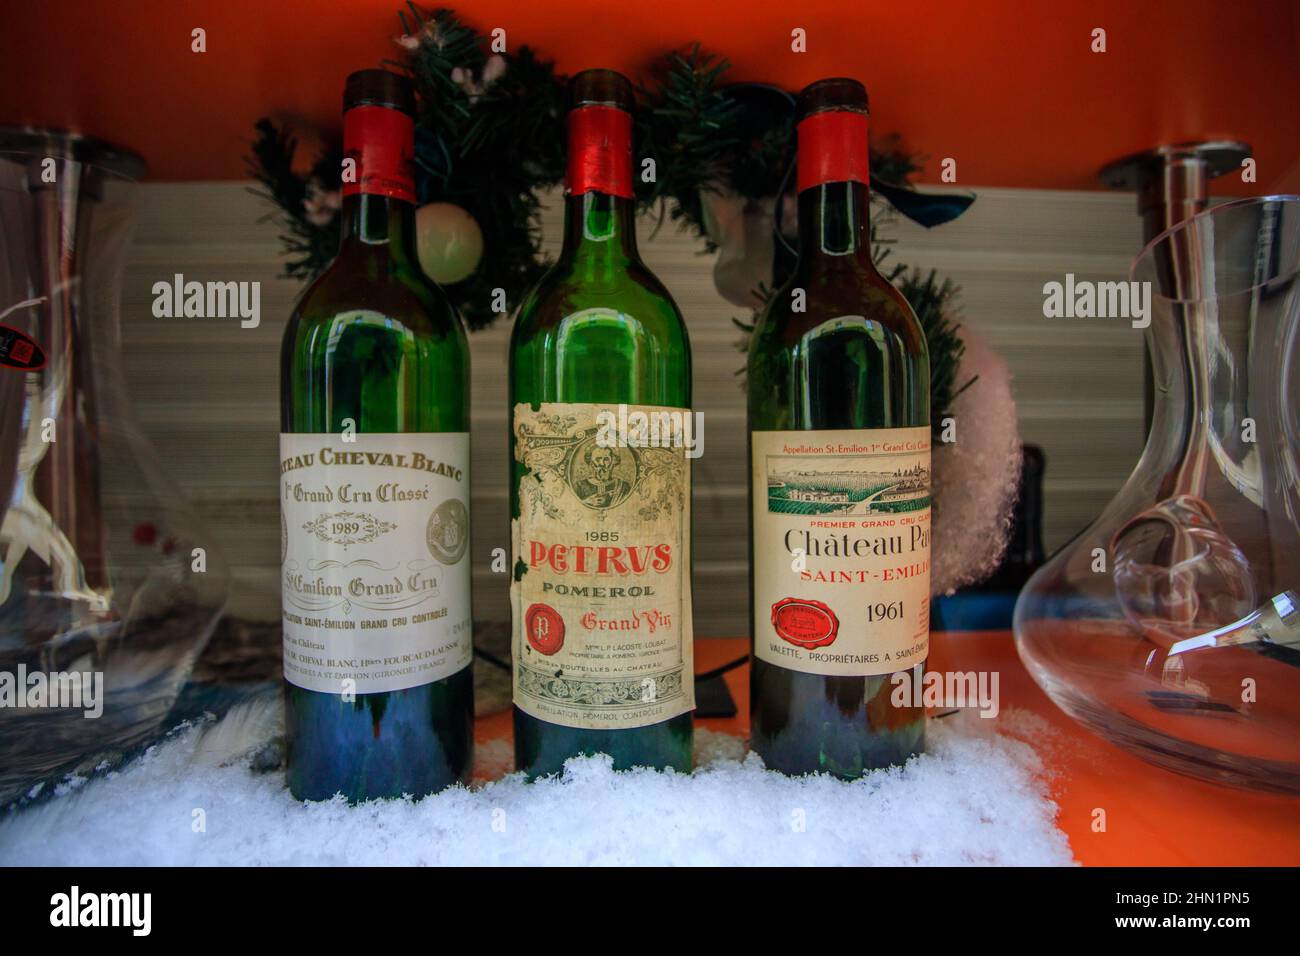 Bottle of pétrus Banque de photographies et d'images à haute résolution -  Alamy